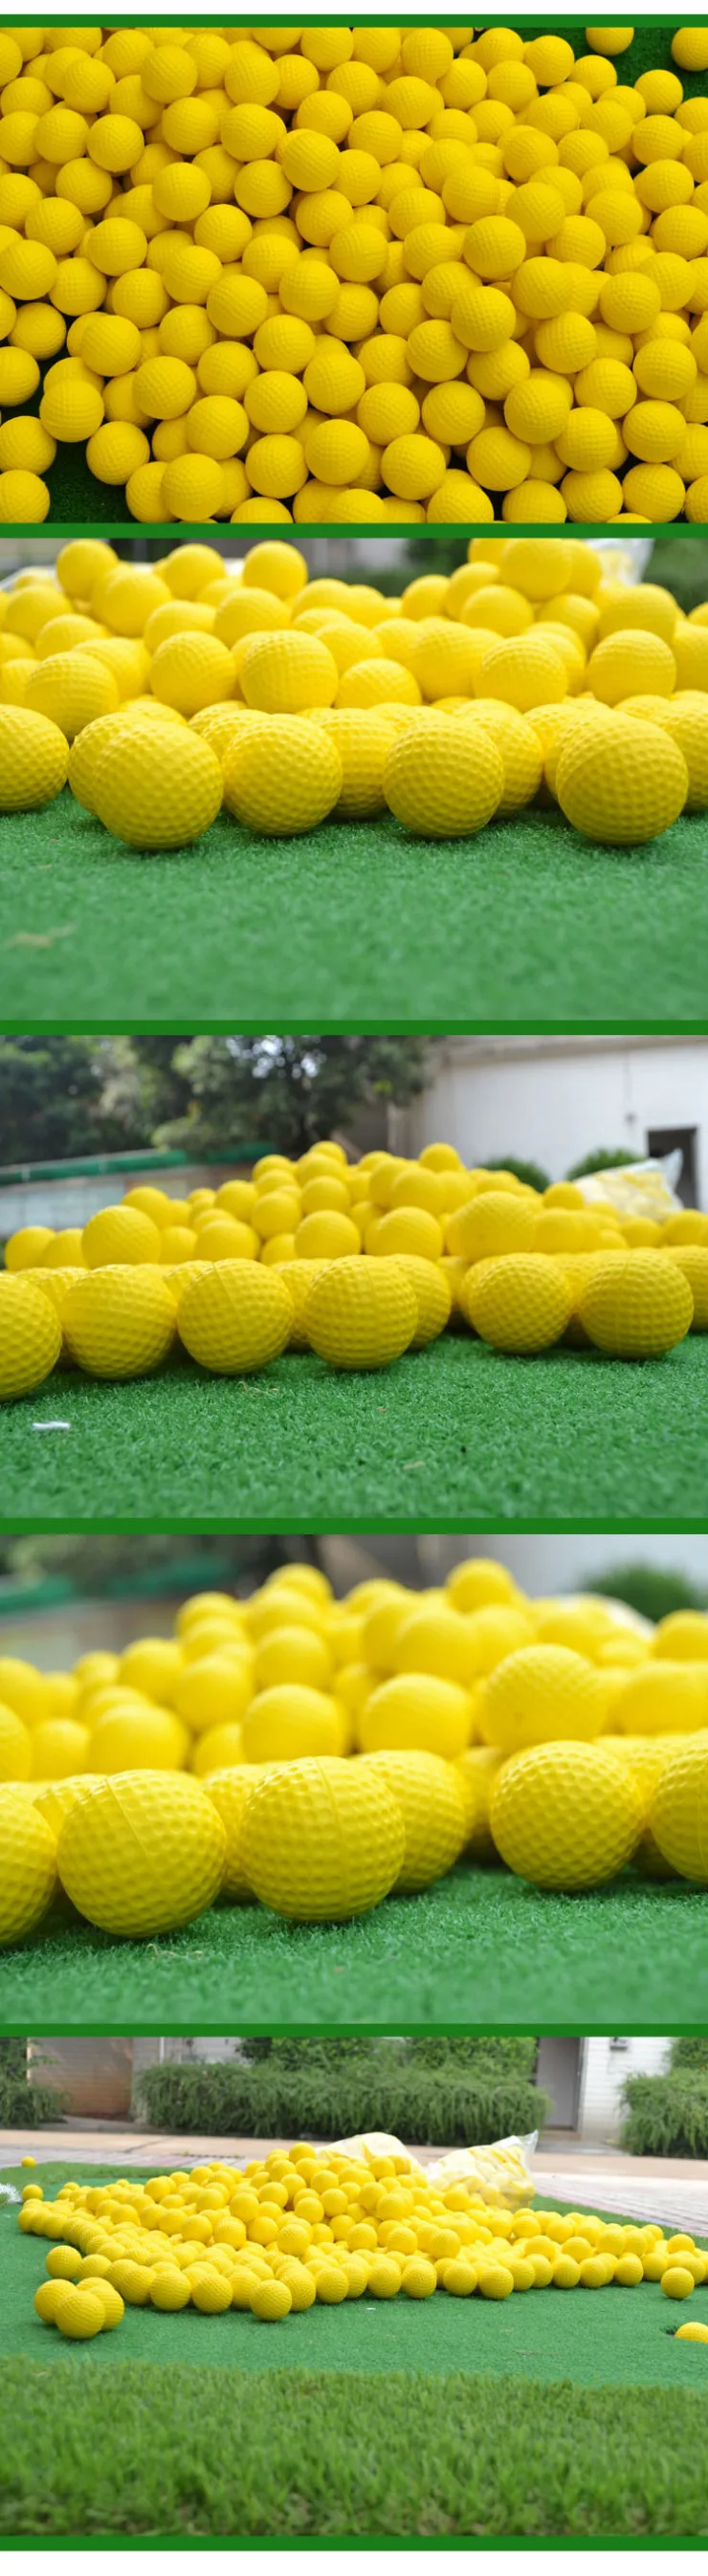 42 мм упругие мячи для игры в гольф, мягкие мячи для игры в гольф, желтые, цветные, ПУ мячи для тренировок, пена для игры в гольф, губки